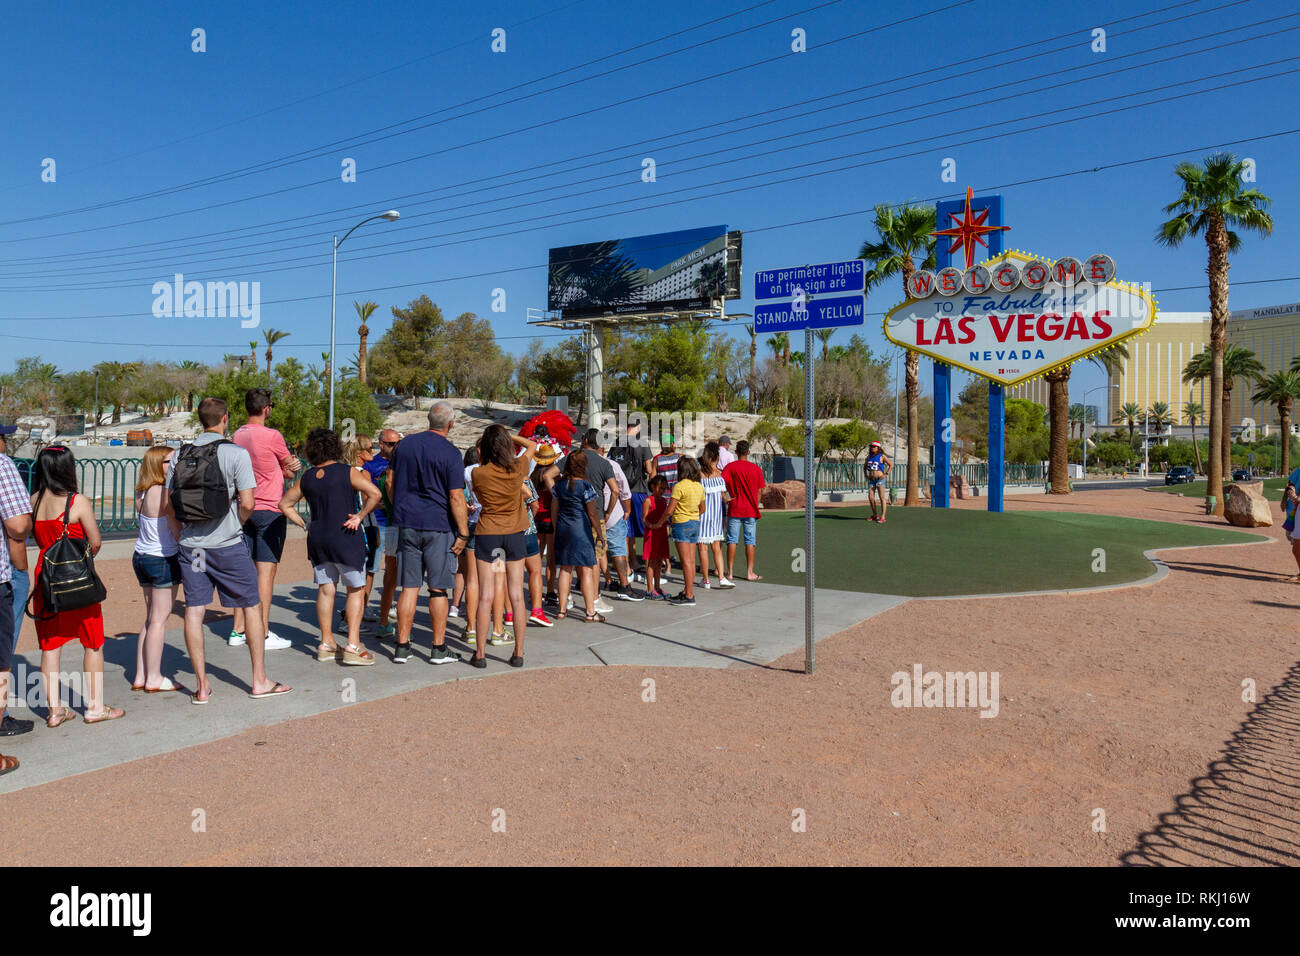 Línea de visitantes esperando para tomar una fotografía en frente de la famosa "Bienvenido a la fabulosa Las Vegas" Signo, Las Vegas, Nevada, Estados Unidos. Foto de stock